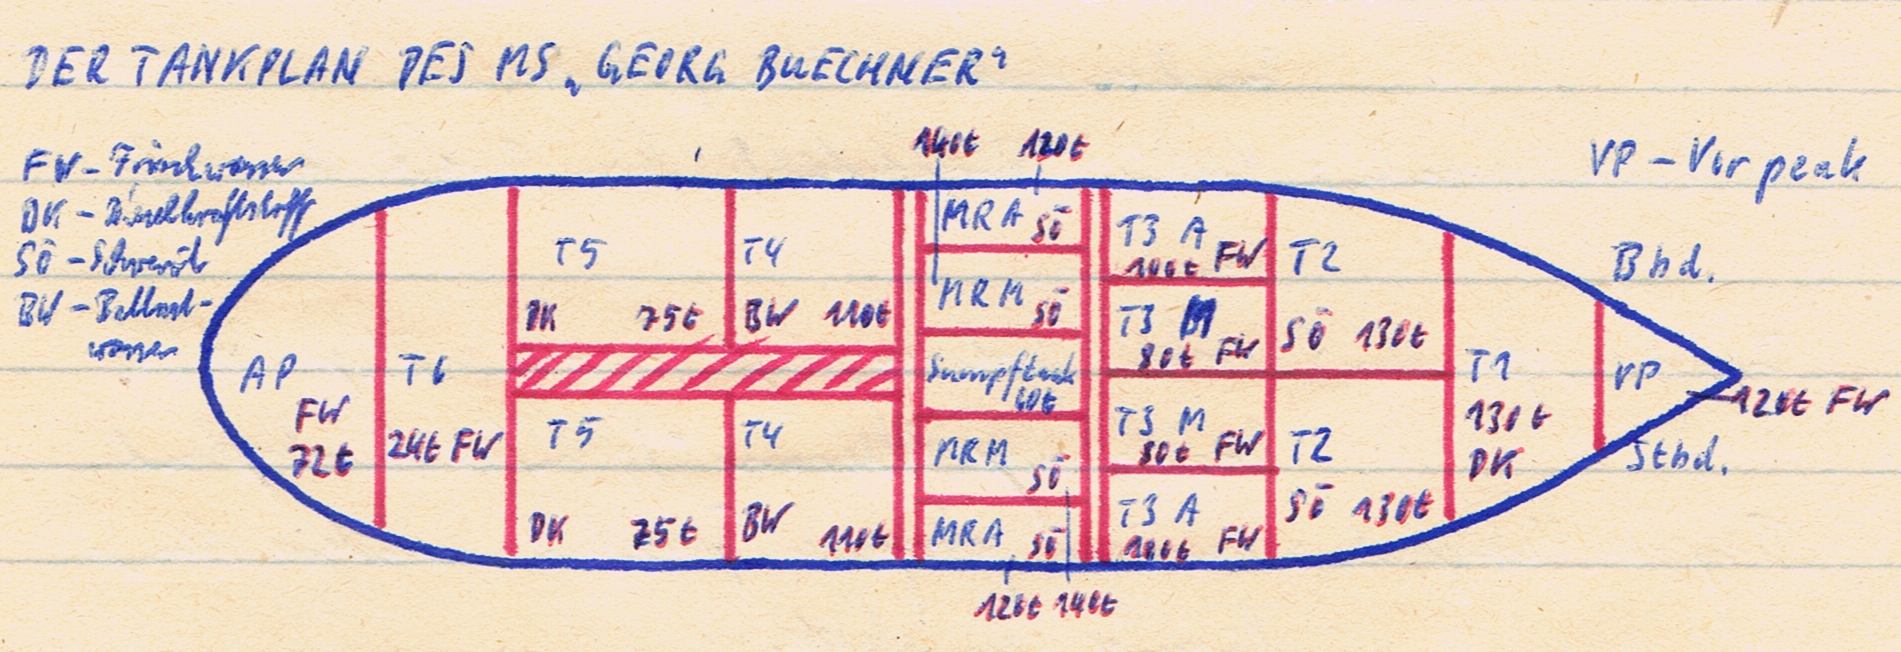 slr-Buechner-Tankplan-ba.jpg